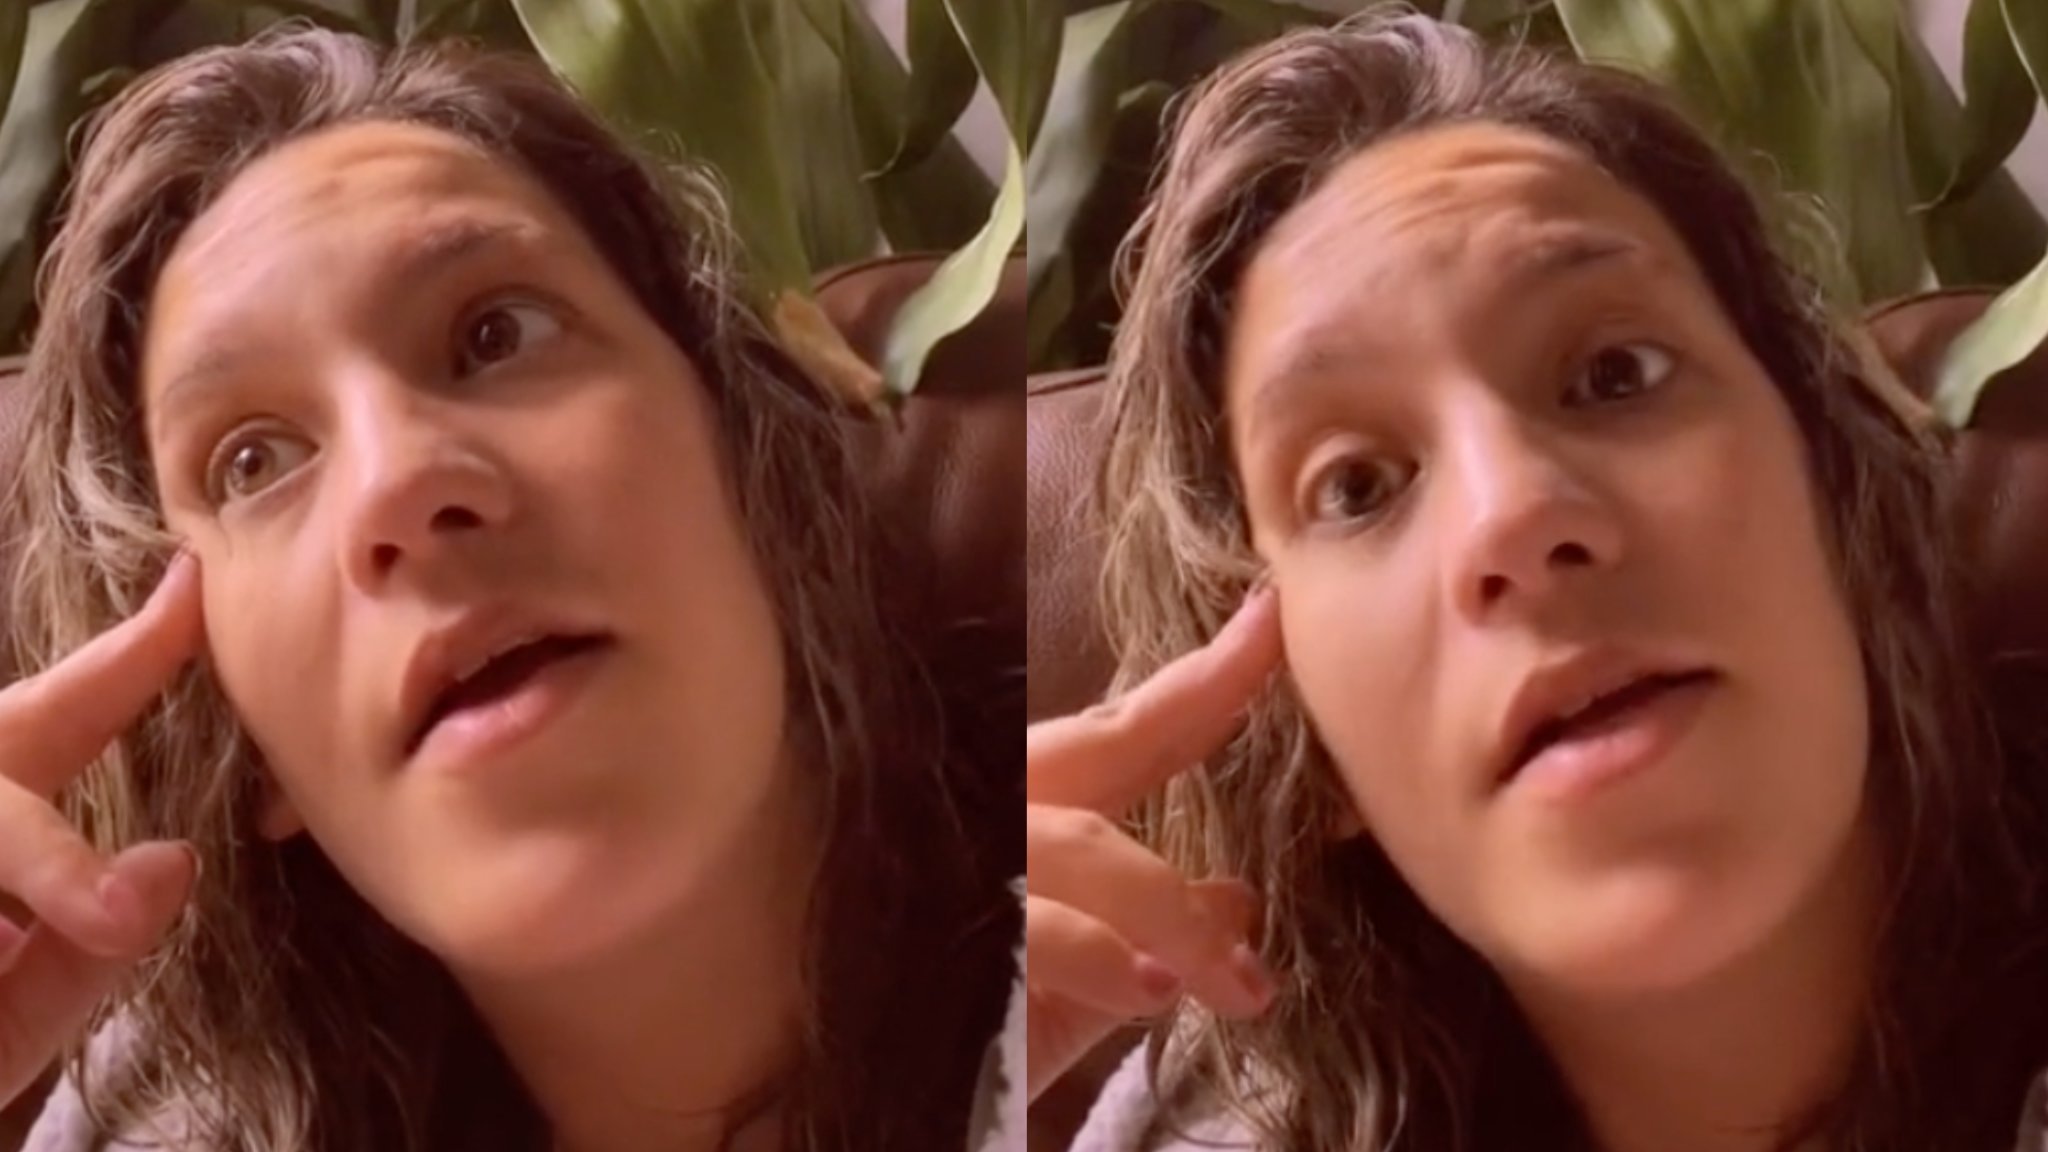 Toddler accidentally livestreams mom's shower in horrifying viral post